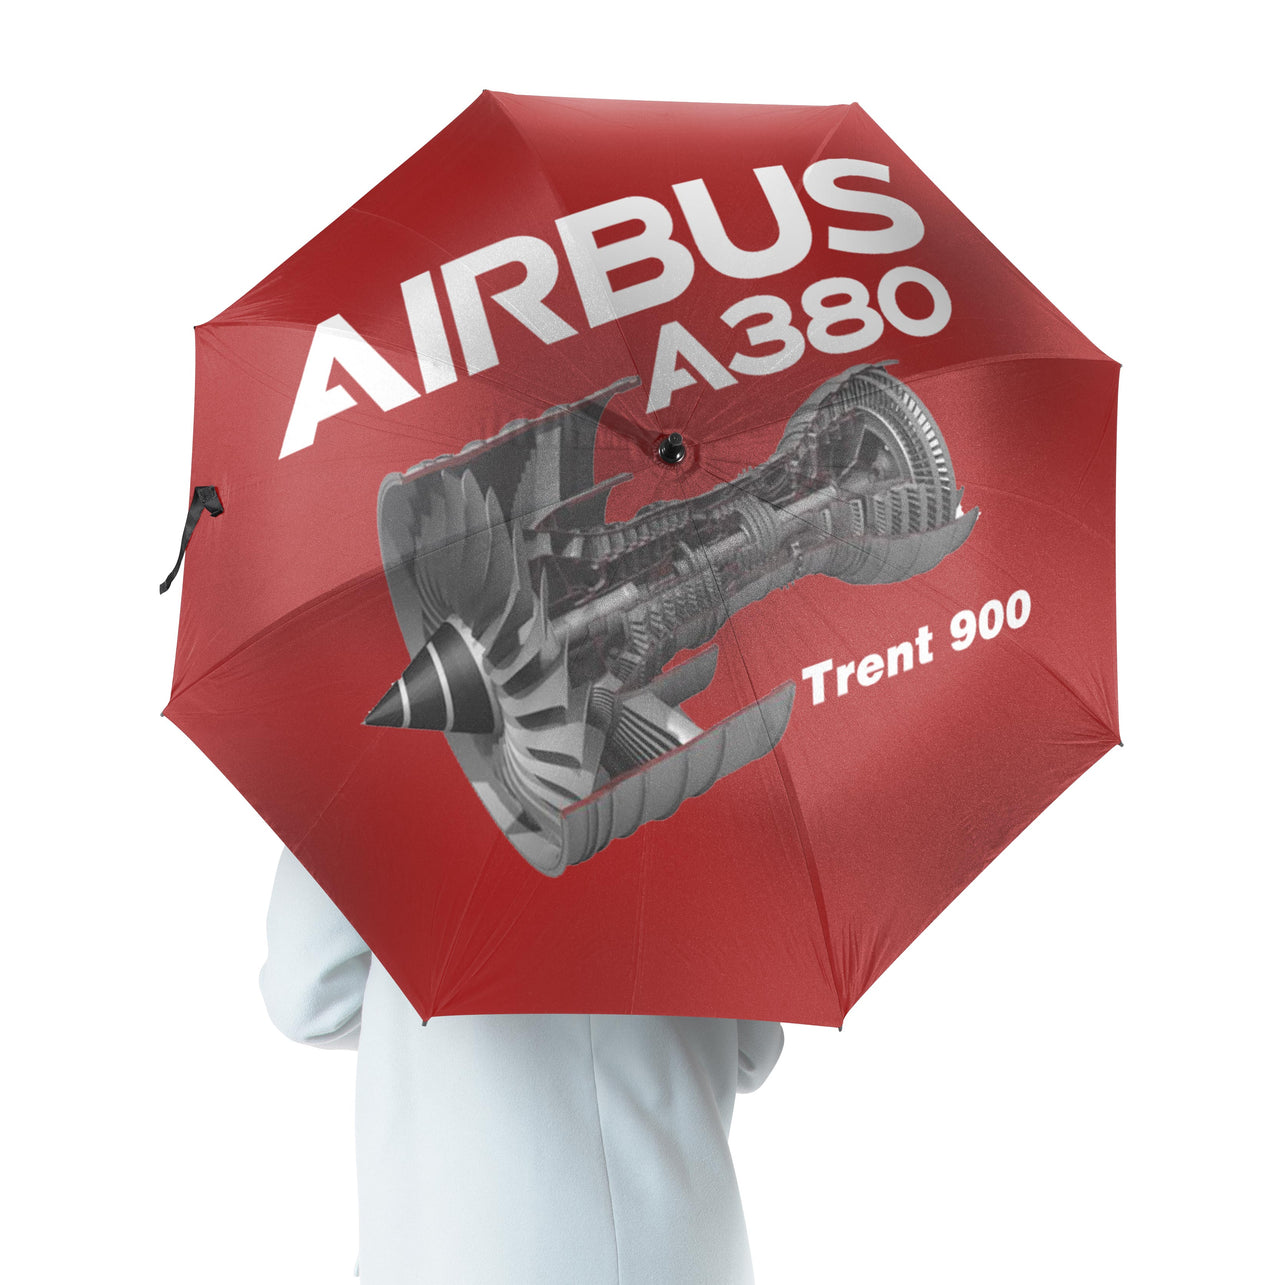 Airbus A380 & Trent 900 Engine Designed Umbrella